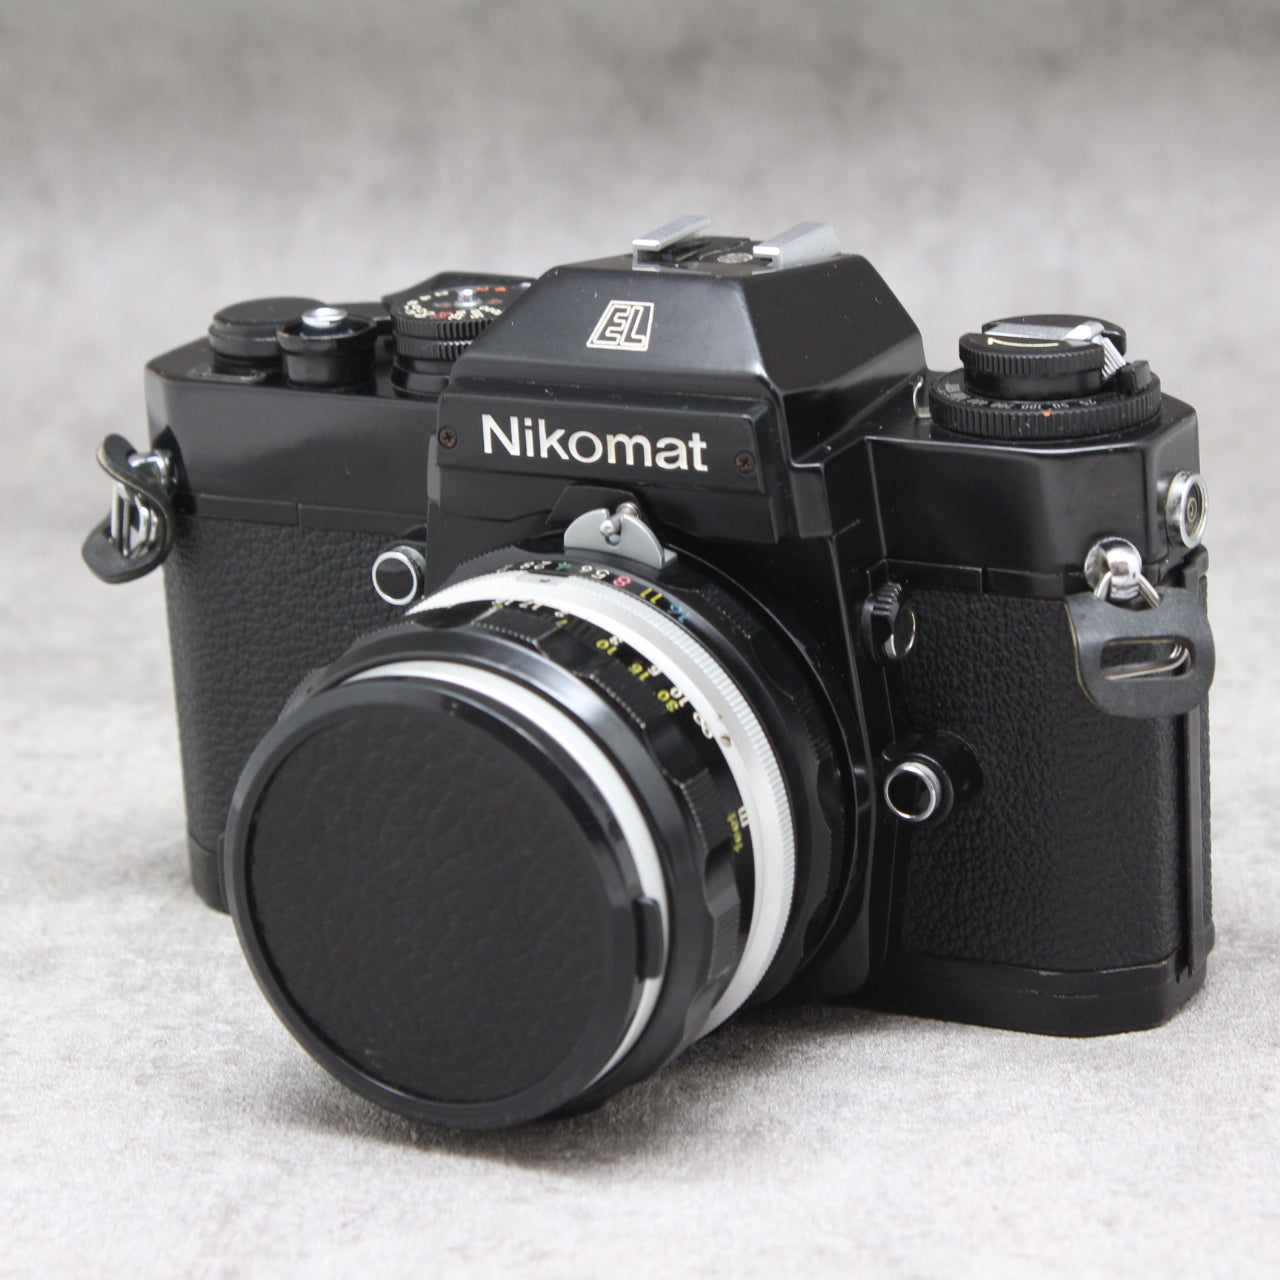 完全動作品!! Nikon Nikomat EL 28mm F3.5 #5590